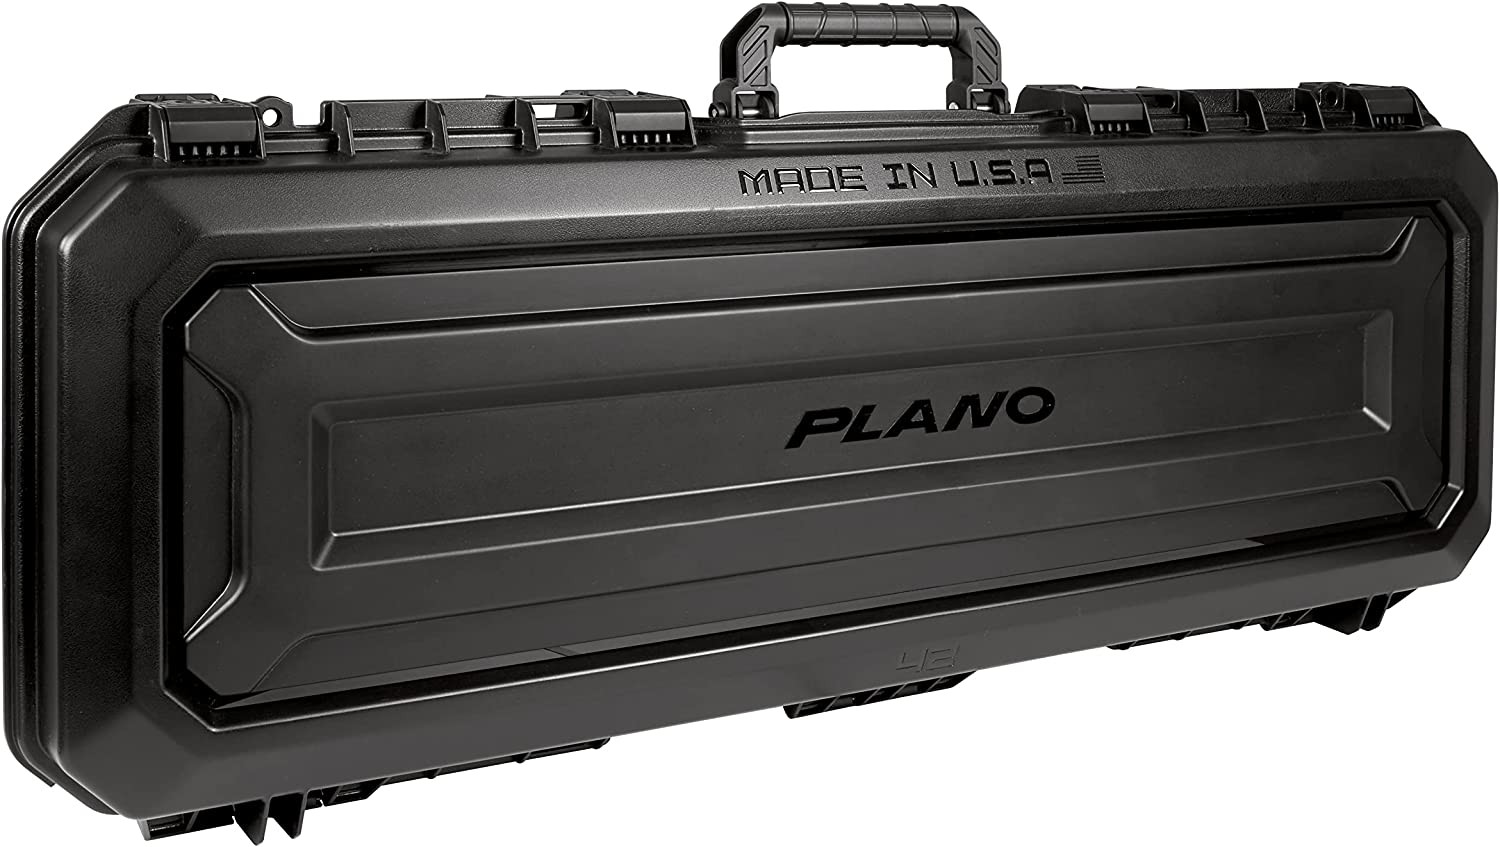 PLANO MOLDING PLA11842 AW 42 inches Green Tactical Gun Case,Single,Black